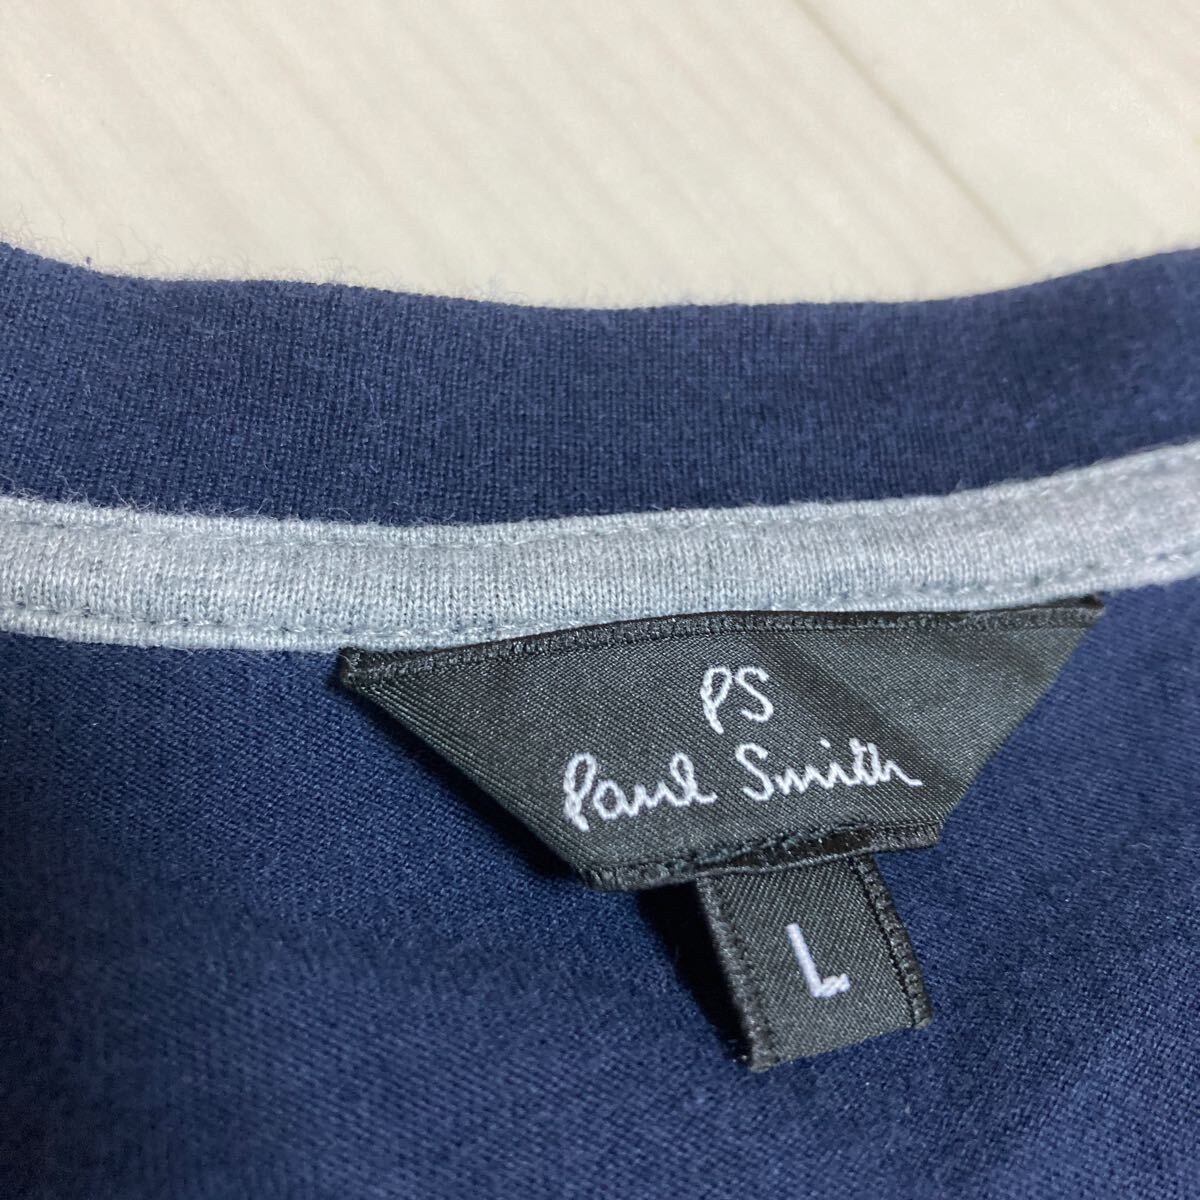 Paul Smith ポールスミス メンズ Lサイズ Tシャツ 半袖 Vネック コットン 紺色_画像2